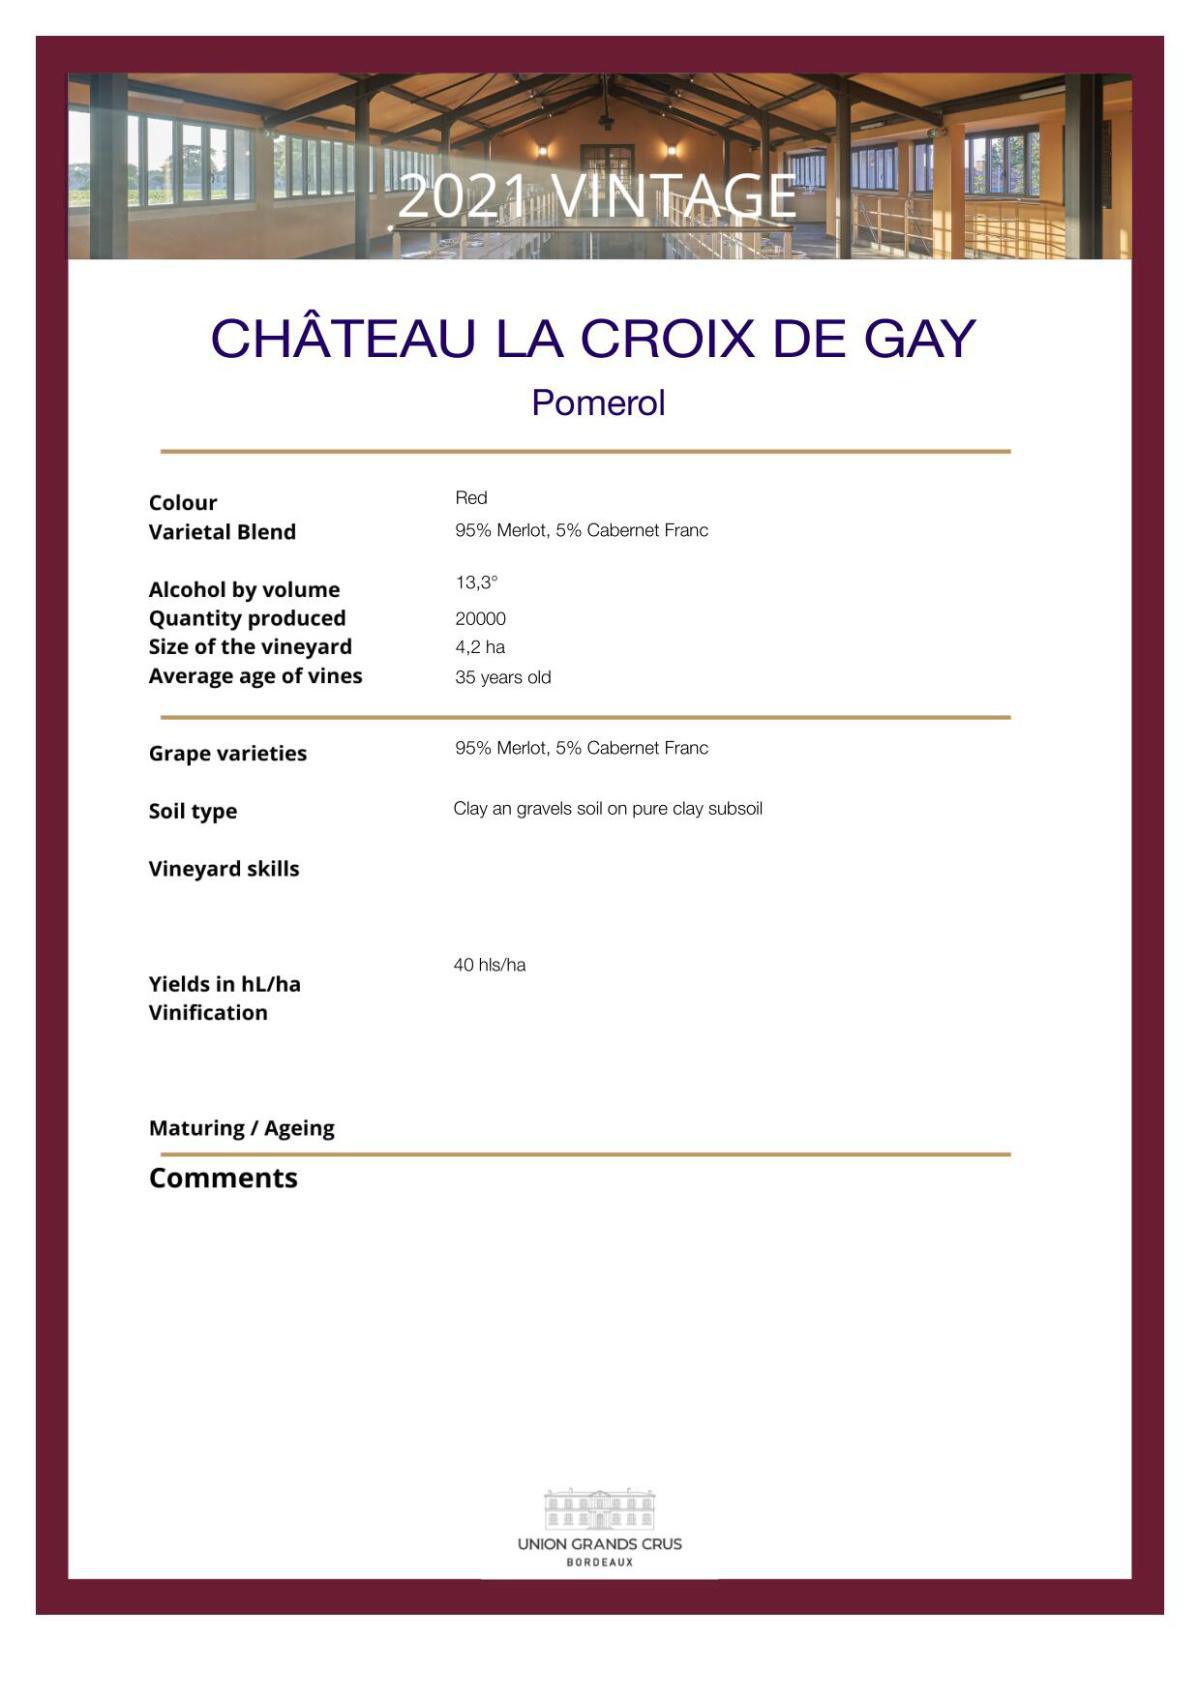 Château La Croix de Gay